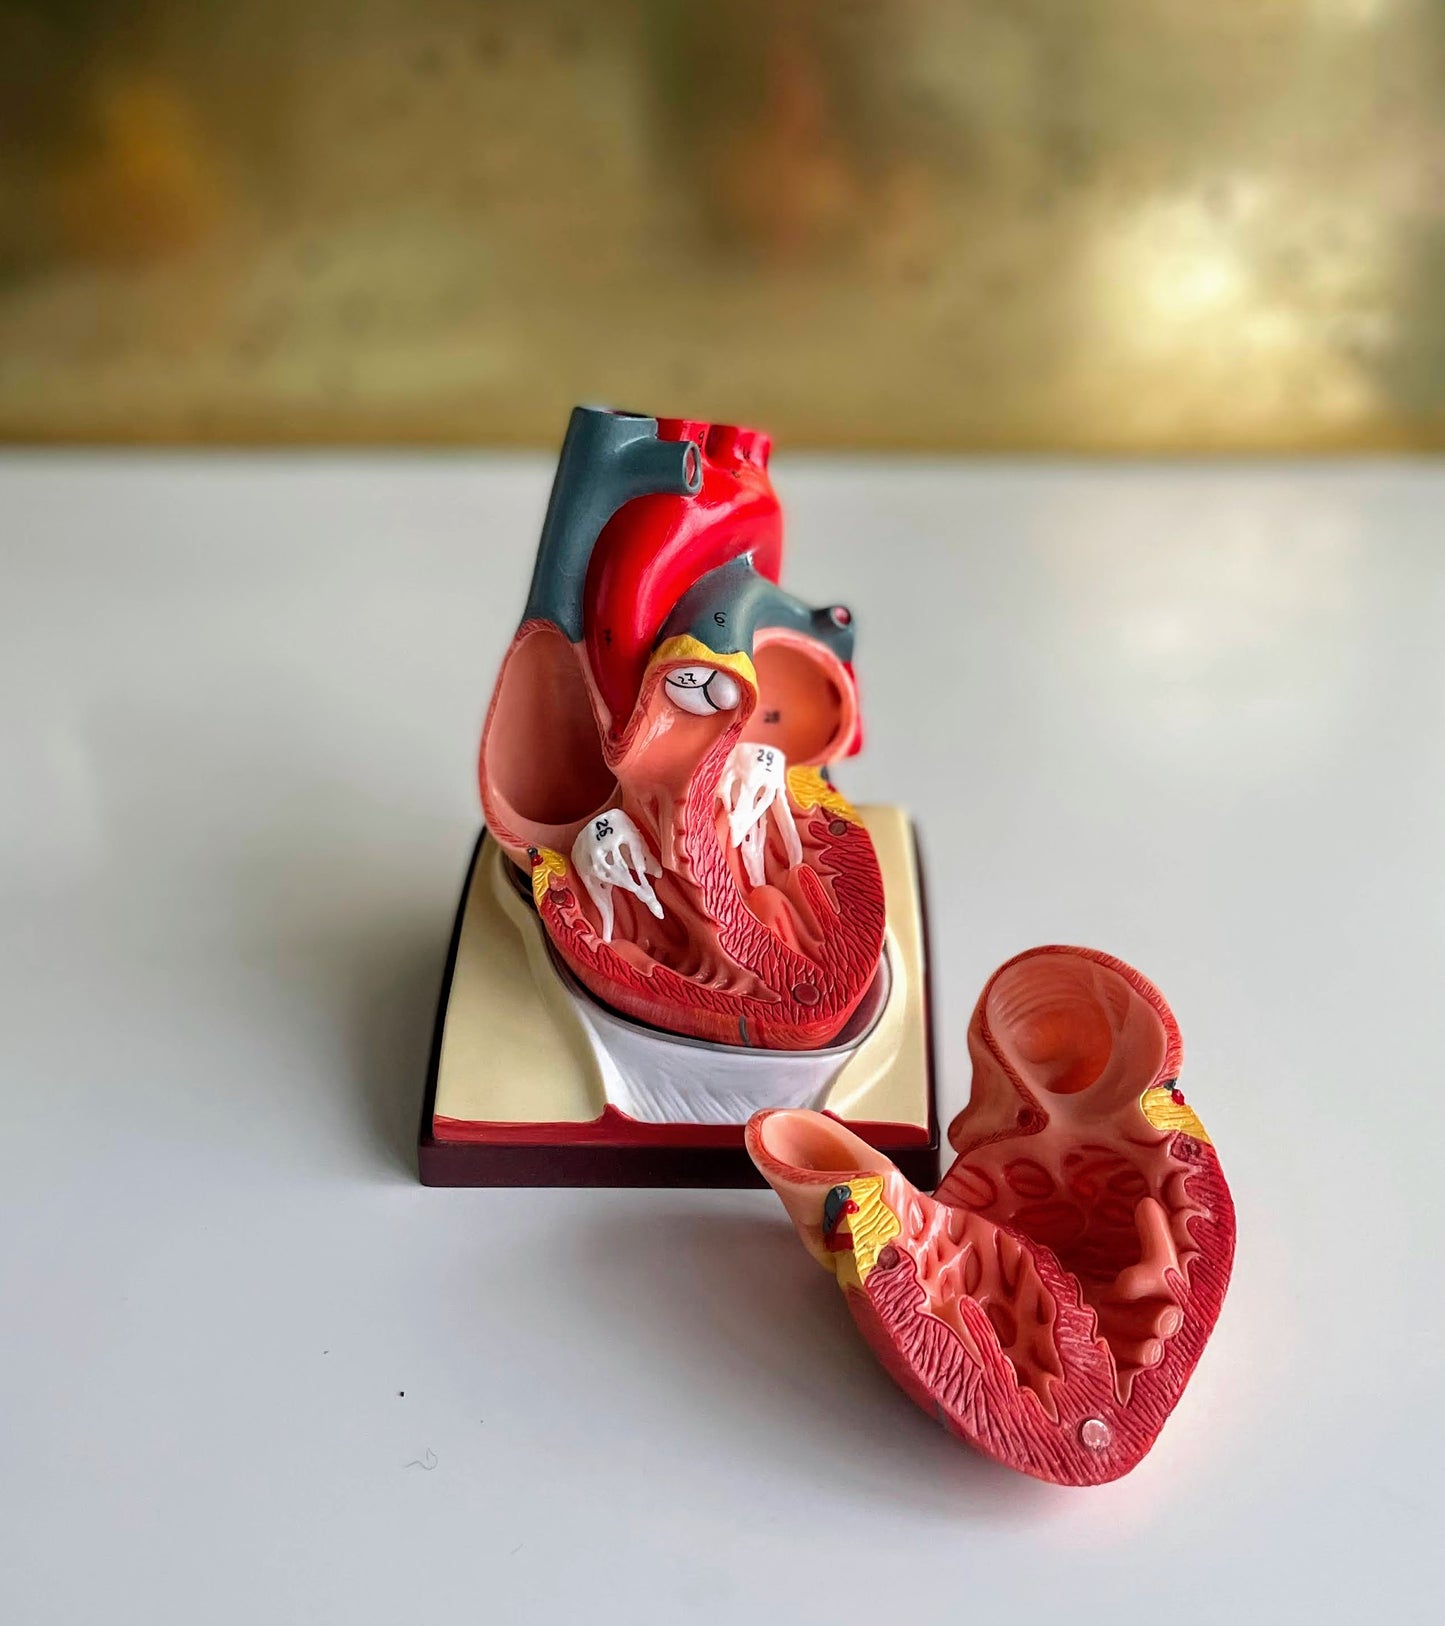 Hjertemodel i høj kvalitet på base der bl.a. viser pericardium